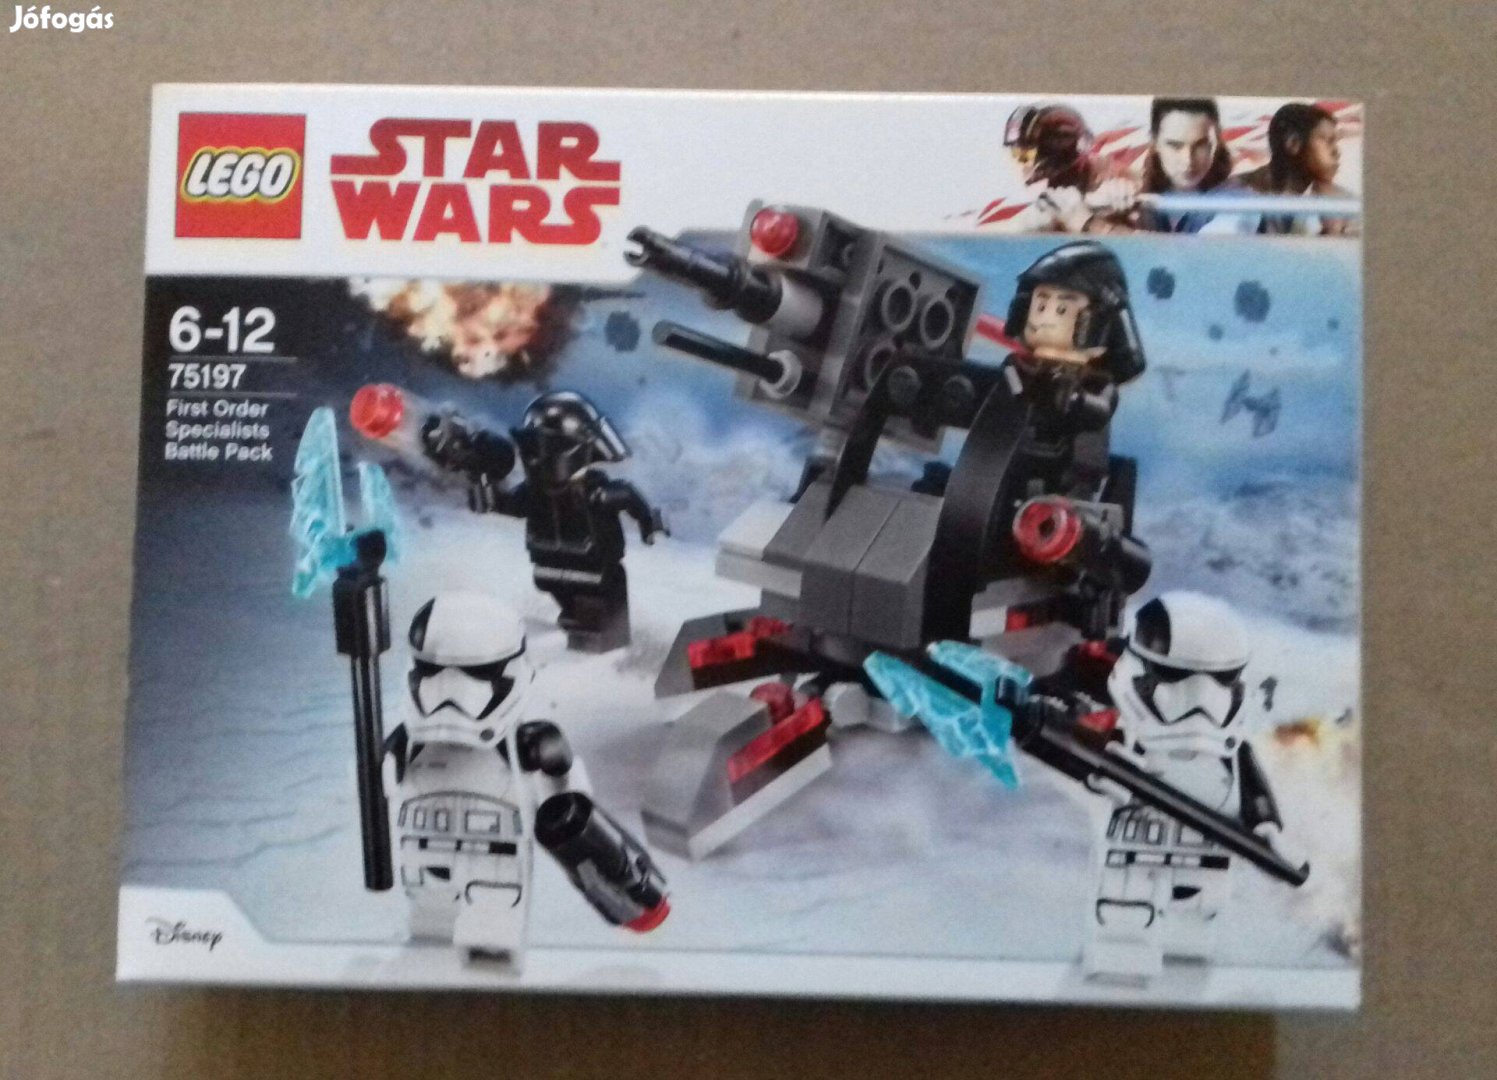 Bontatlan Star Wars LEGO 75197 Első rendi specialisták Foxpost az árba